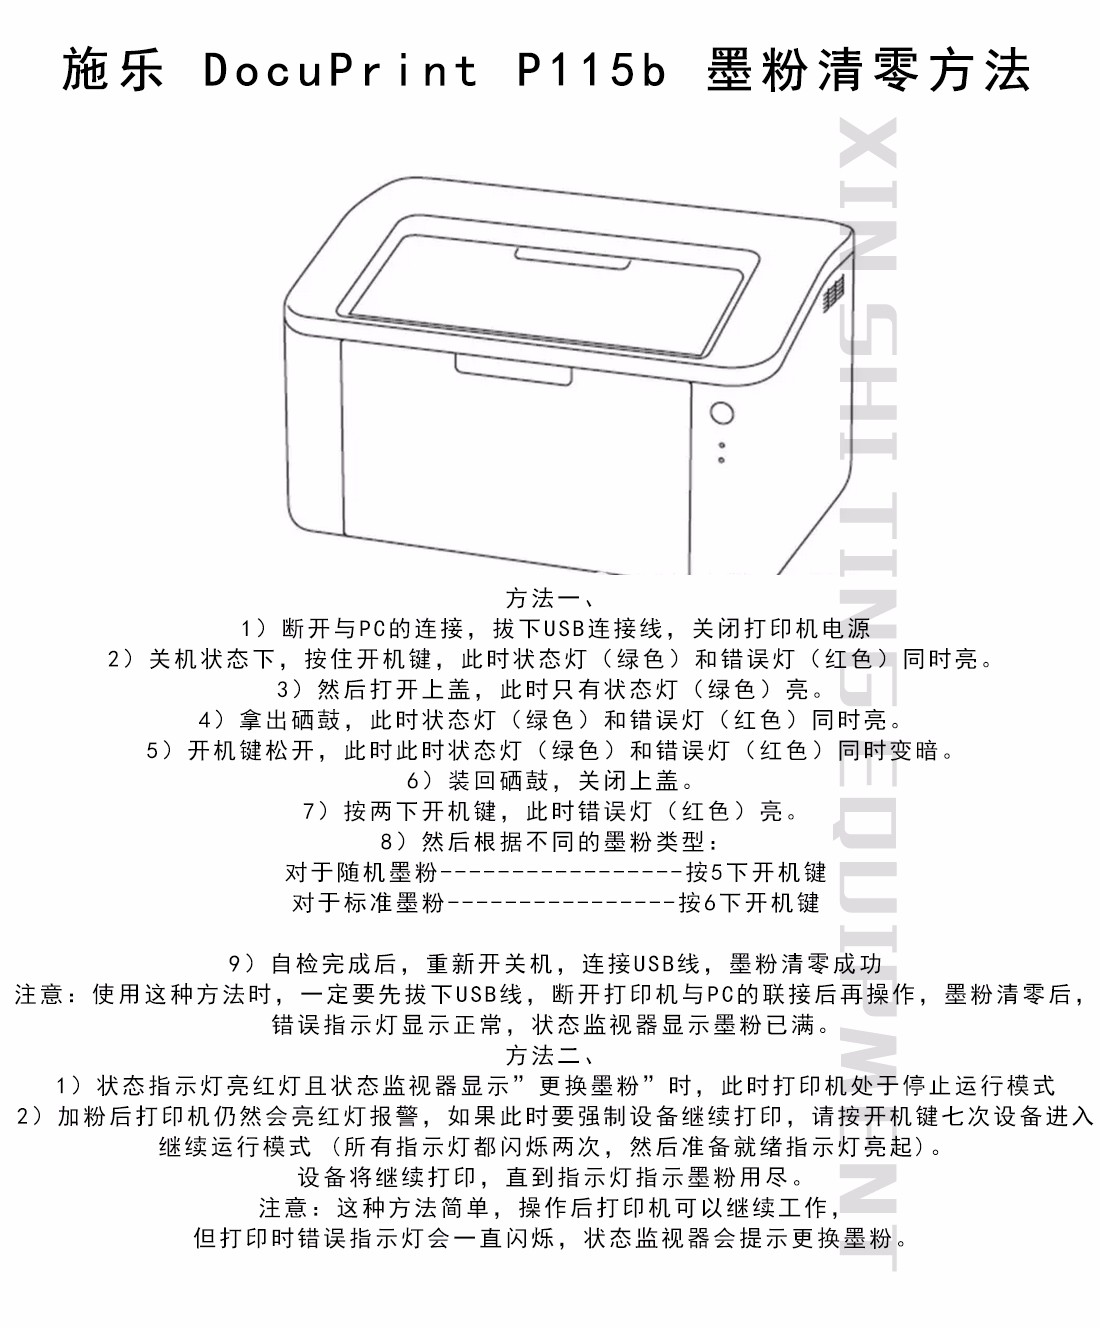 施乐打印机教程.jpg